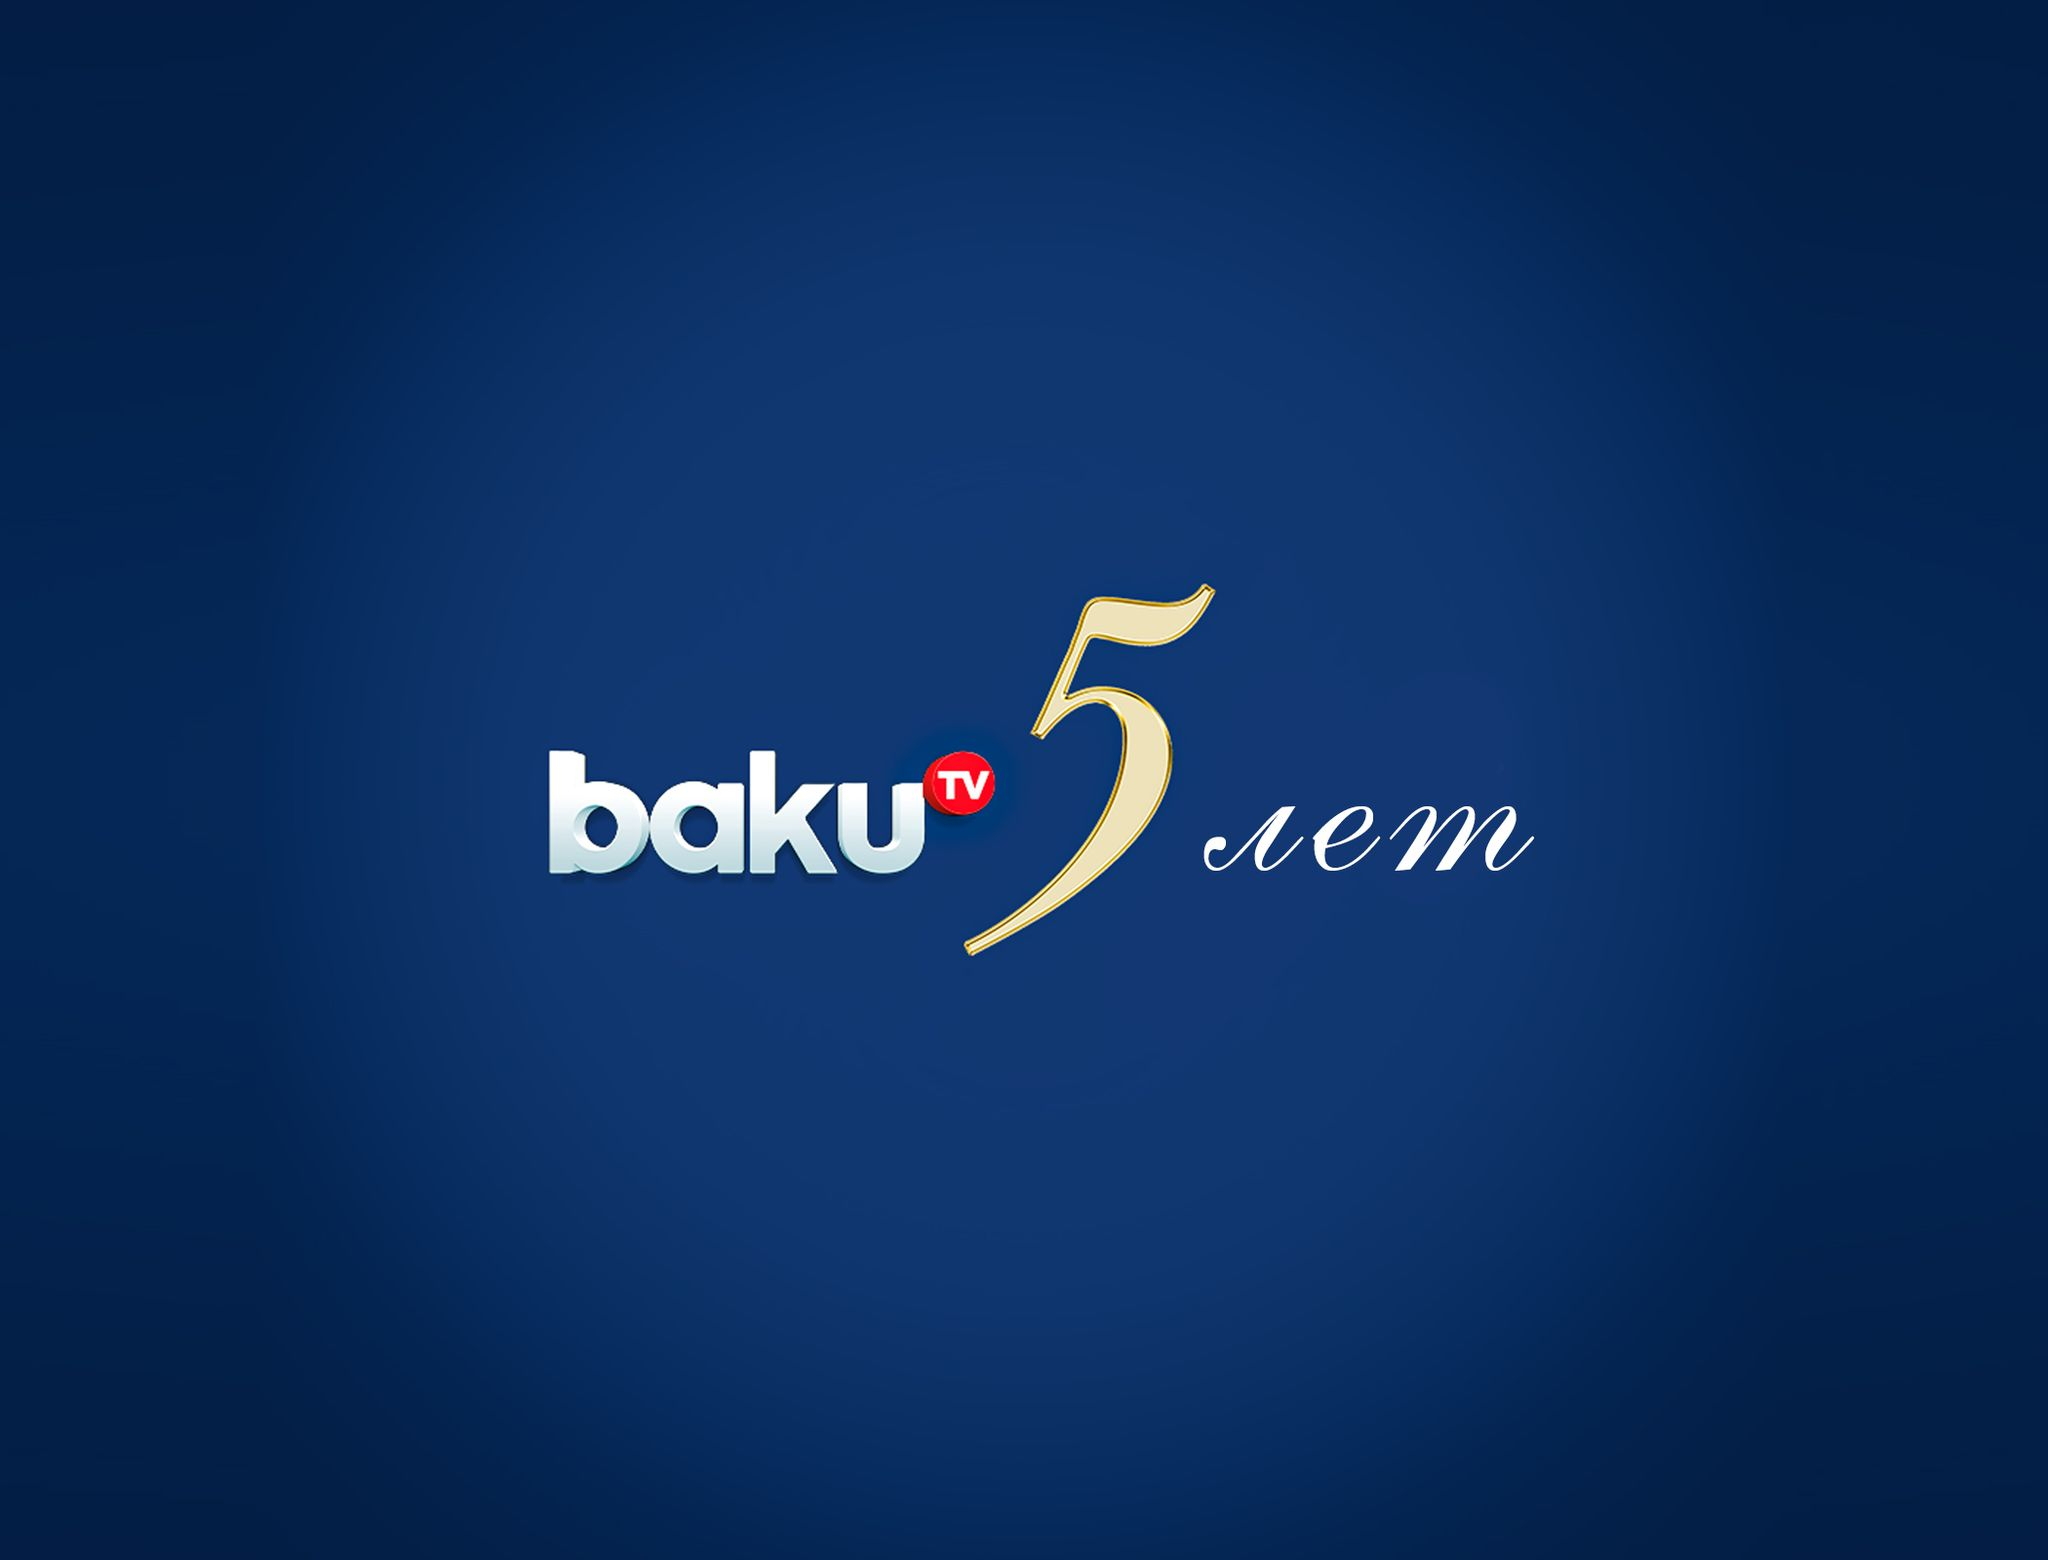 Back tv. Baku TV logo. Baku TV.